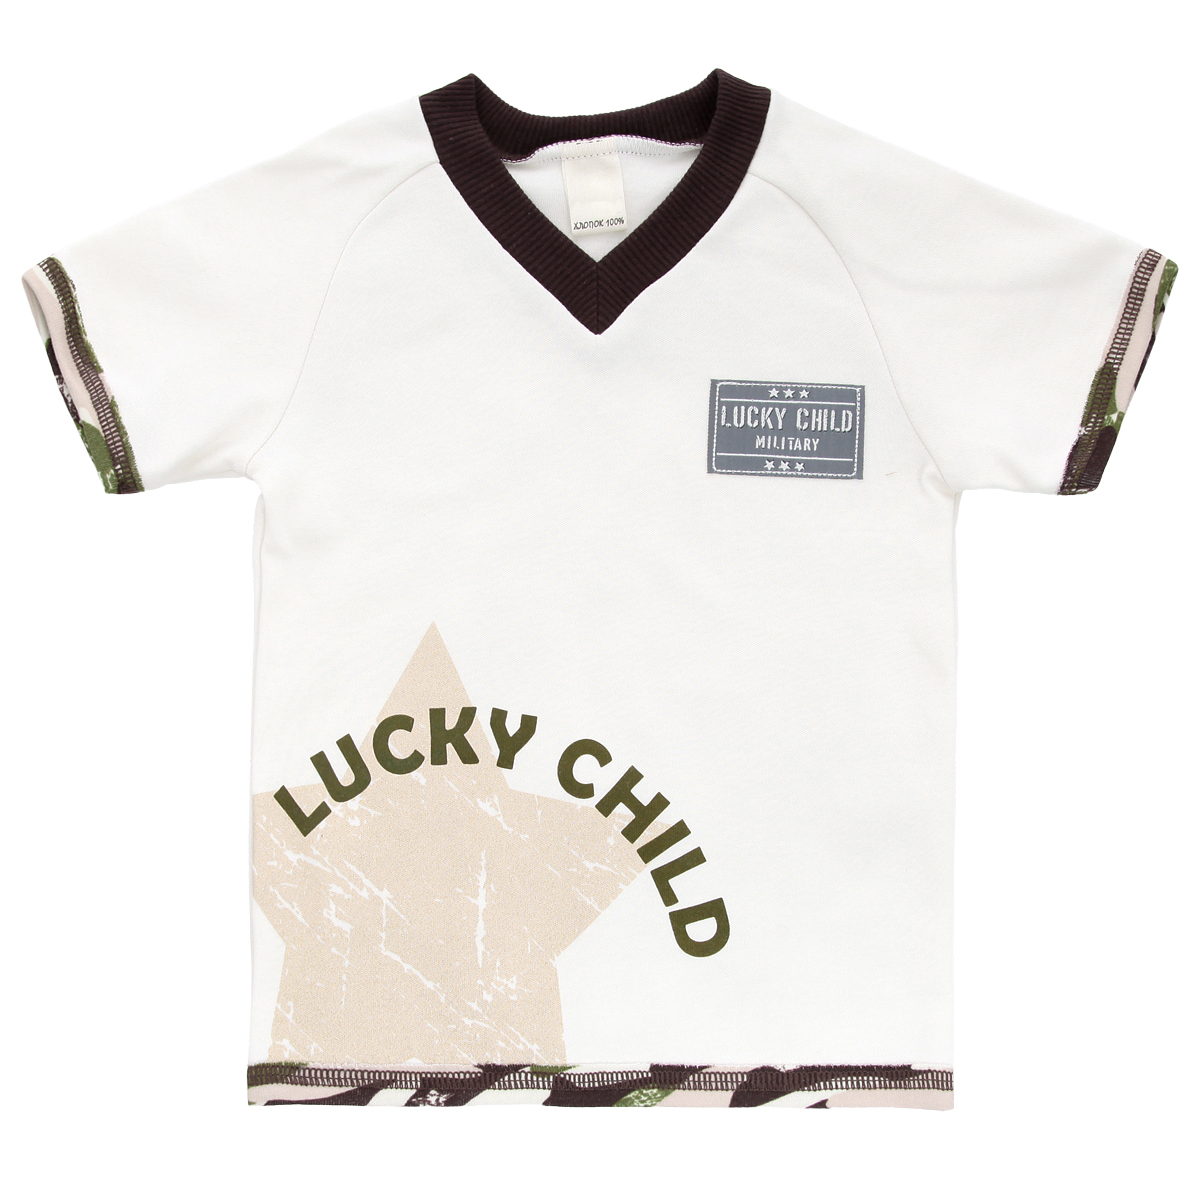 Футболка для мальчика Lucky Child Вежливые люди, цвет: светло-бежевый, темно-коричневый, зеленый. 31-262. Размер 98/104